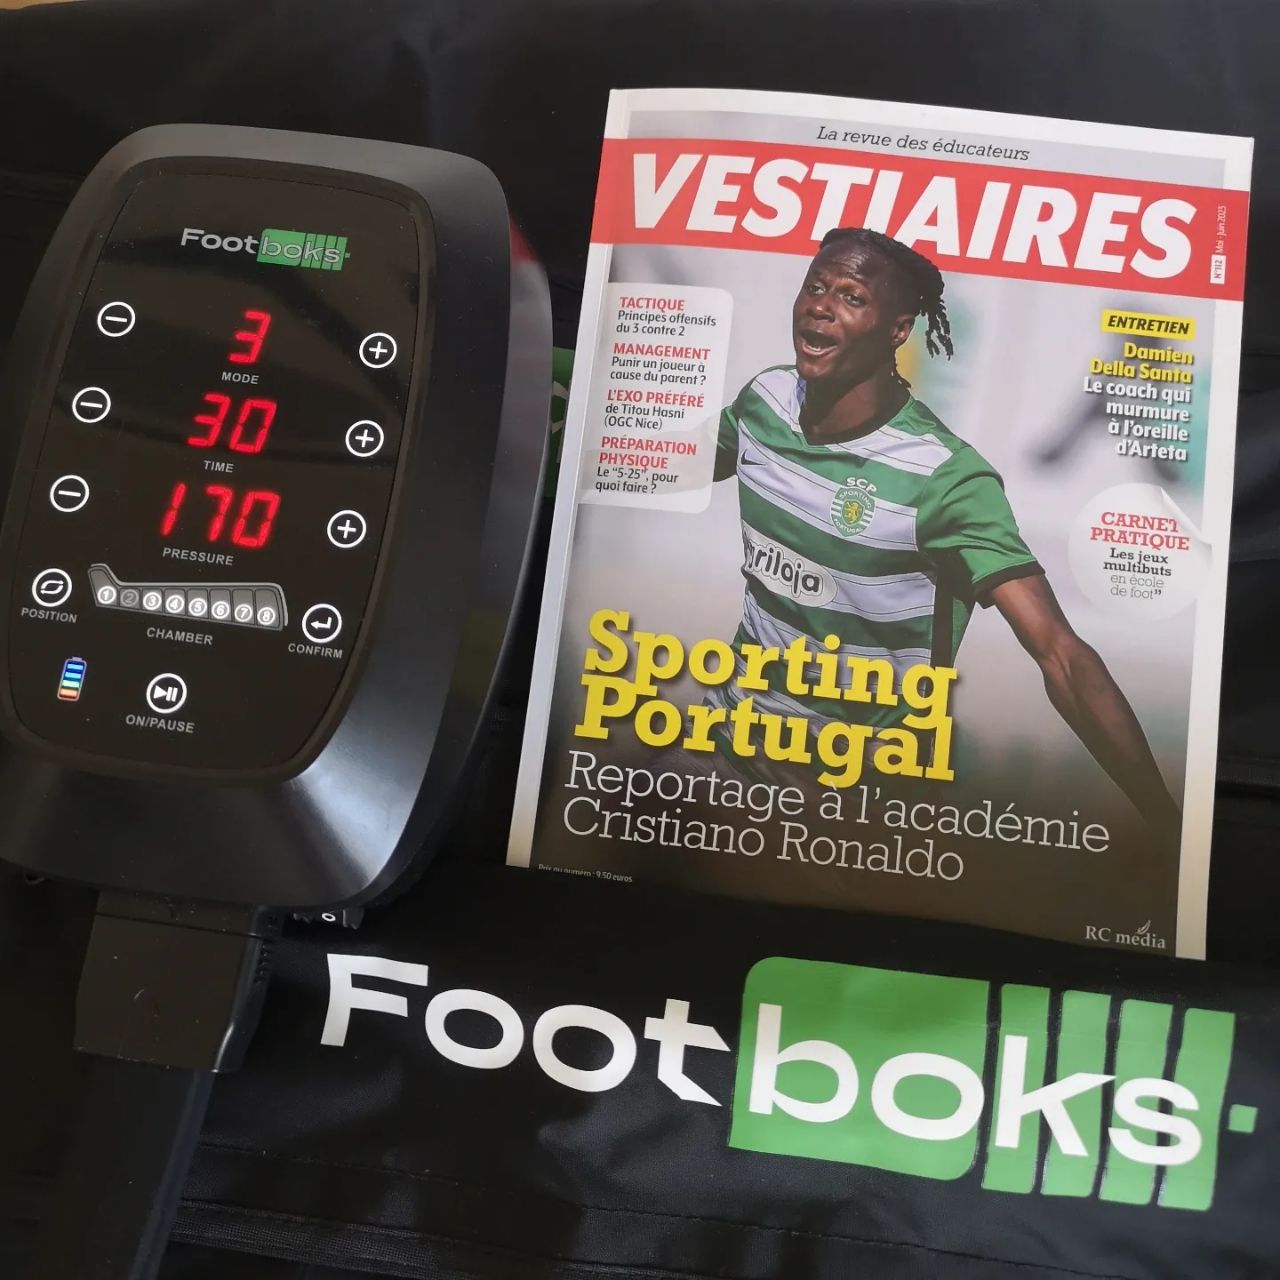 Les bottes de récupération Footboks PRO™ dans le magazine Vestiaires